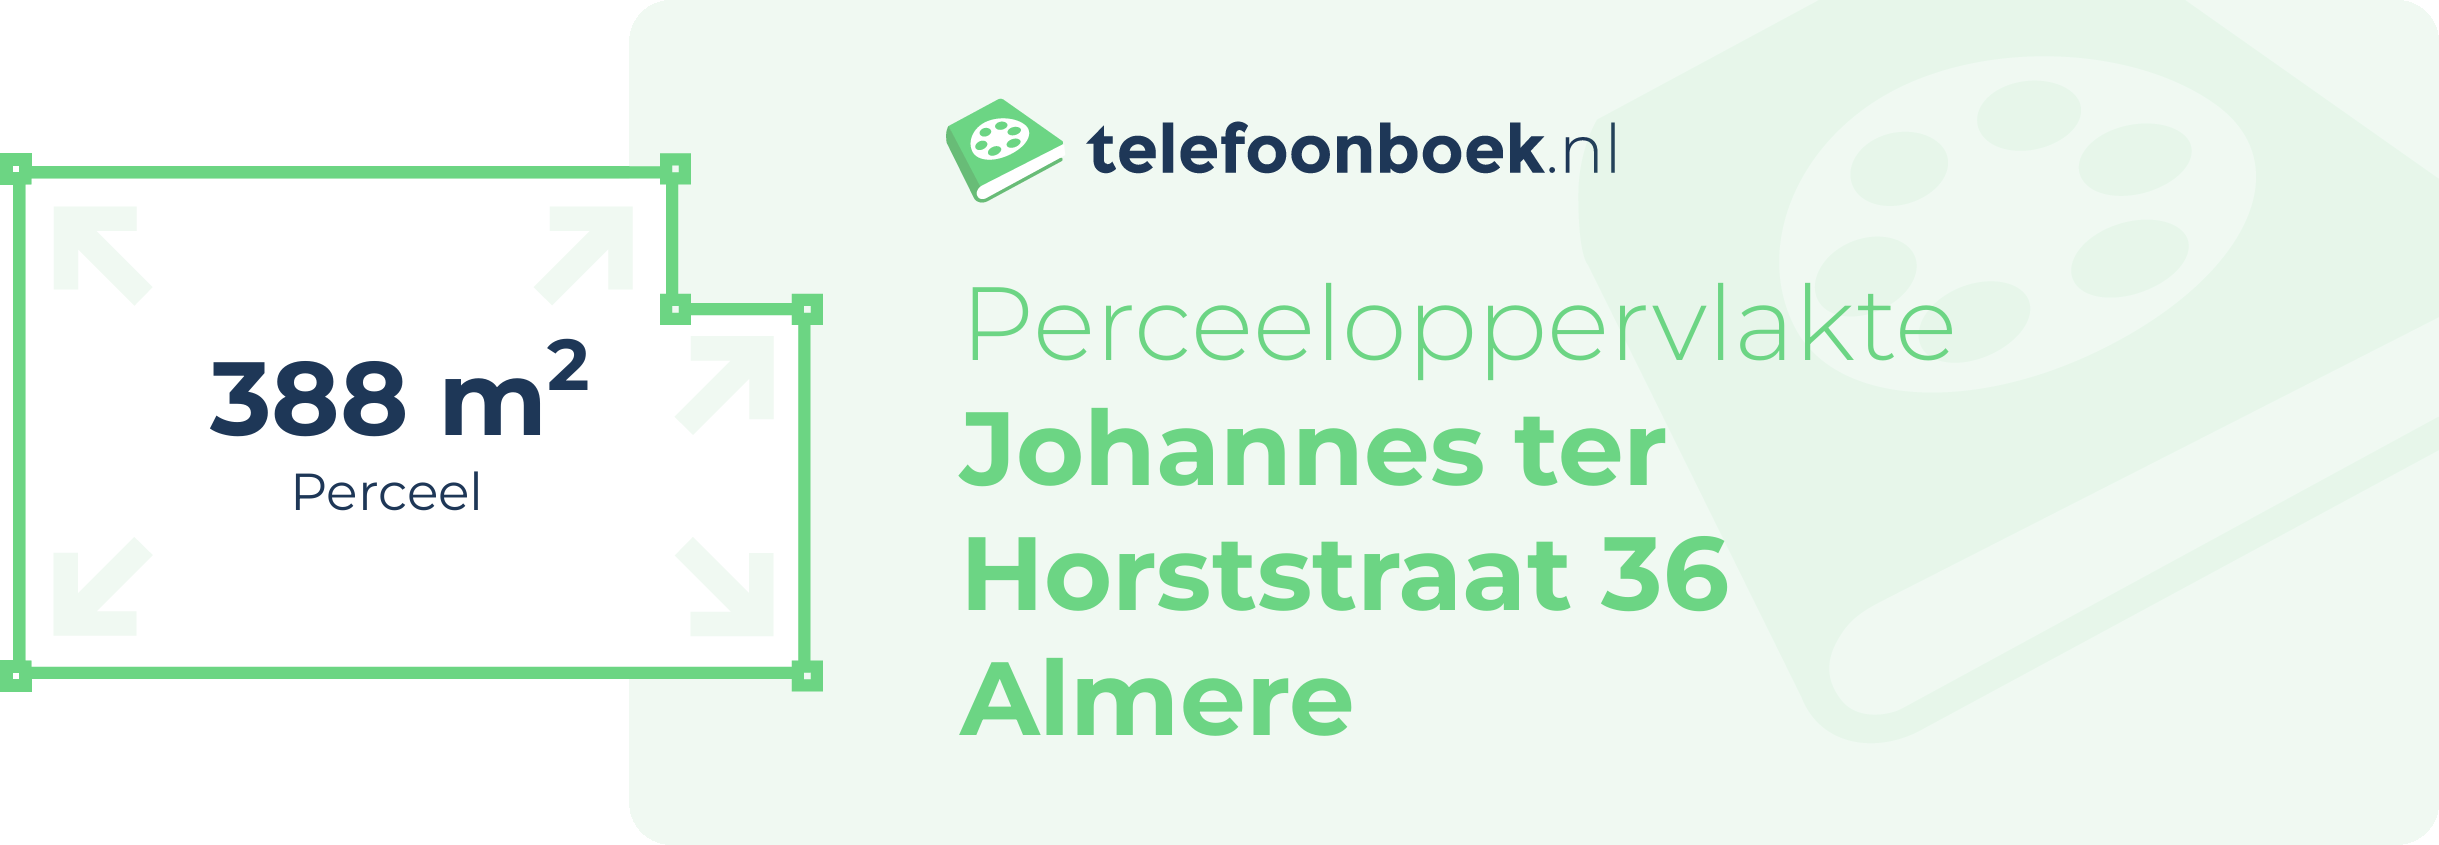 Perceeloppervlakte Johannes Ter Horststraat 36 Almere